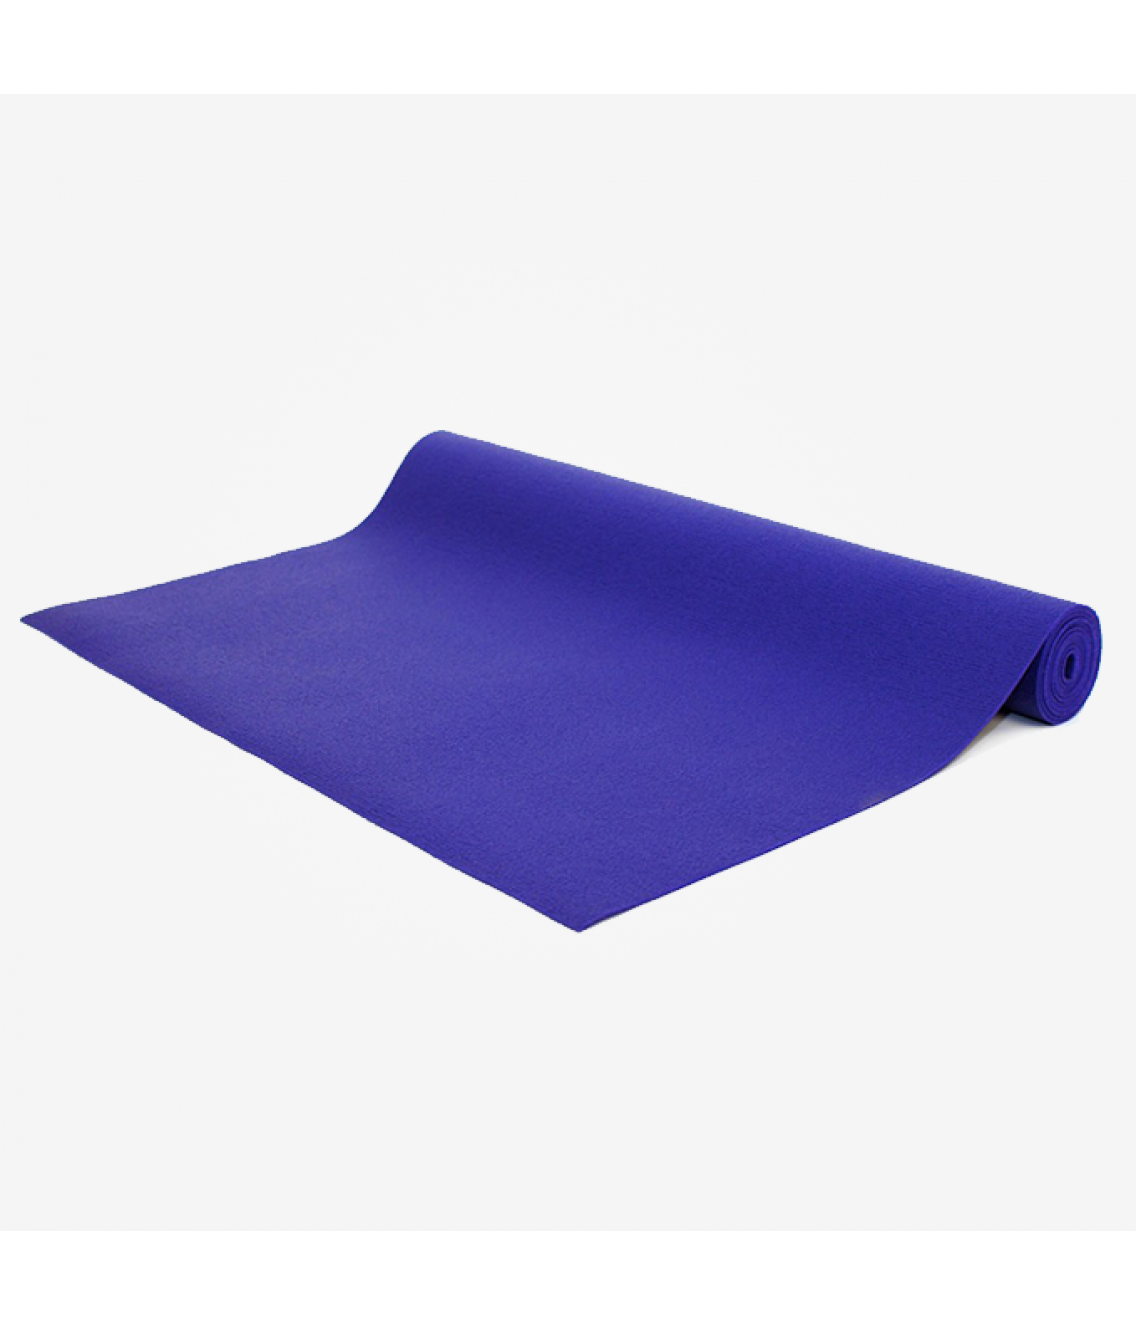 Коврик для йоги Bodhi Kailash 183см 60см 3мм фиолетовый